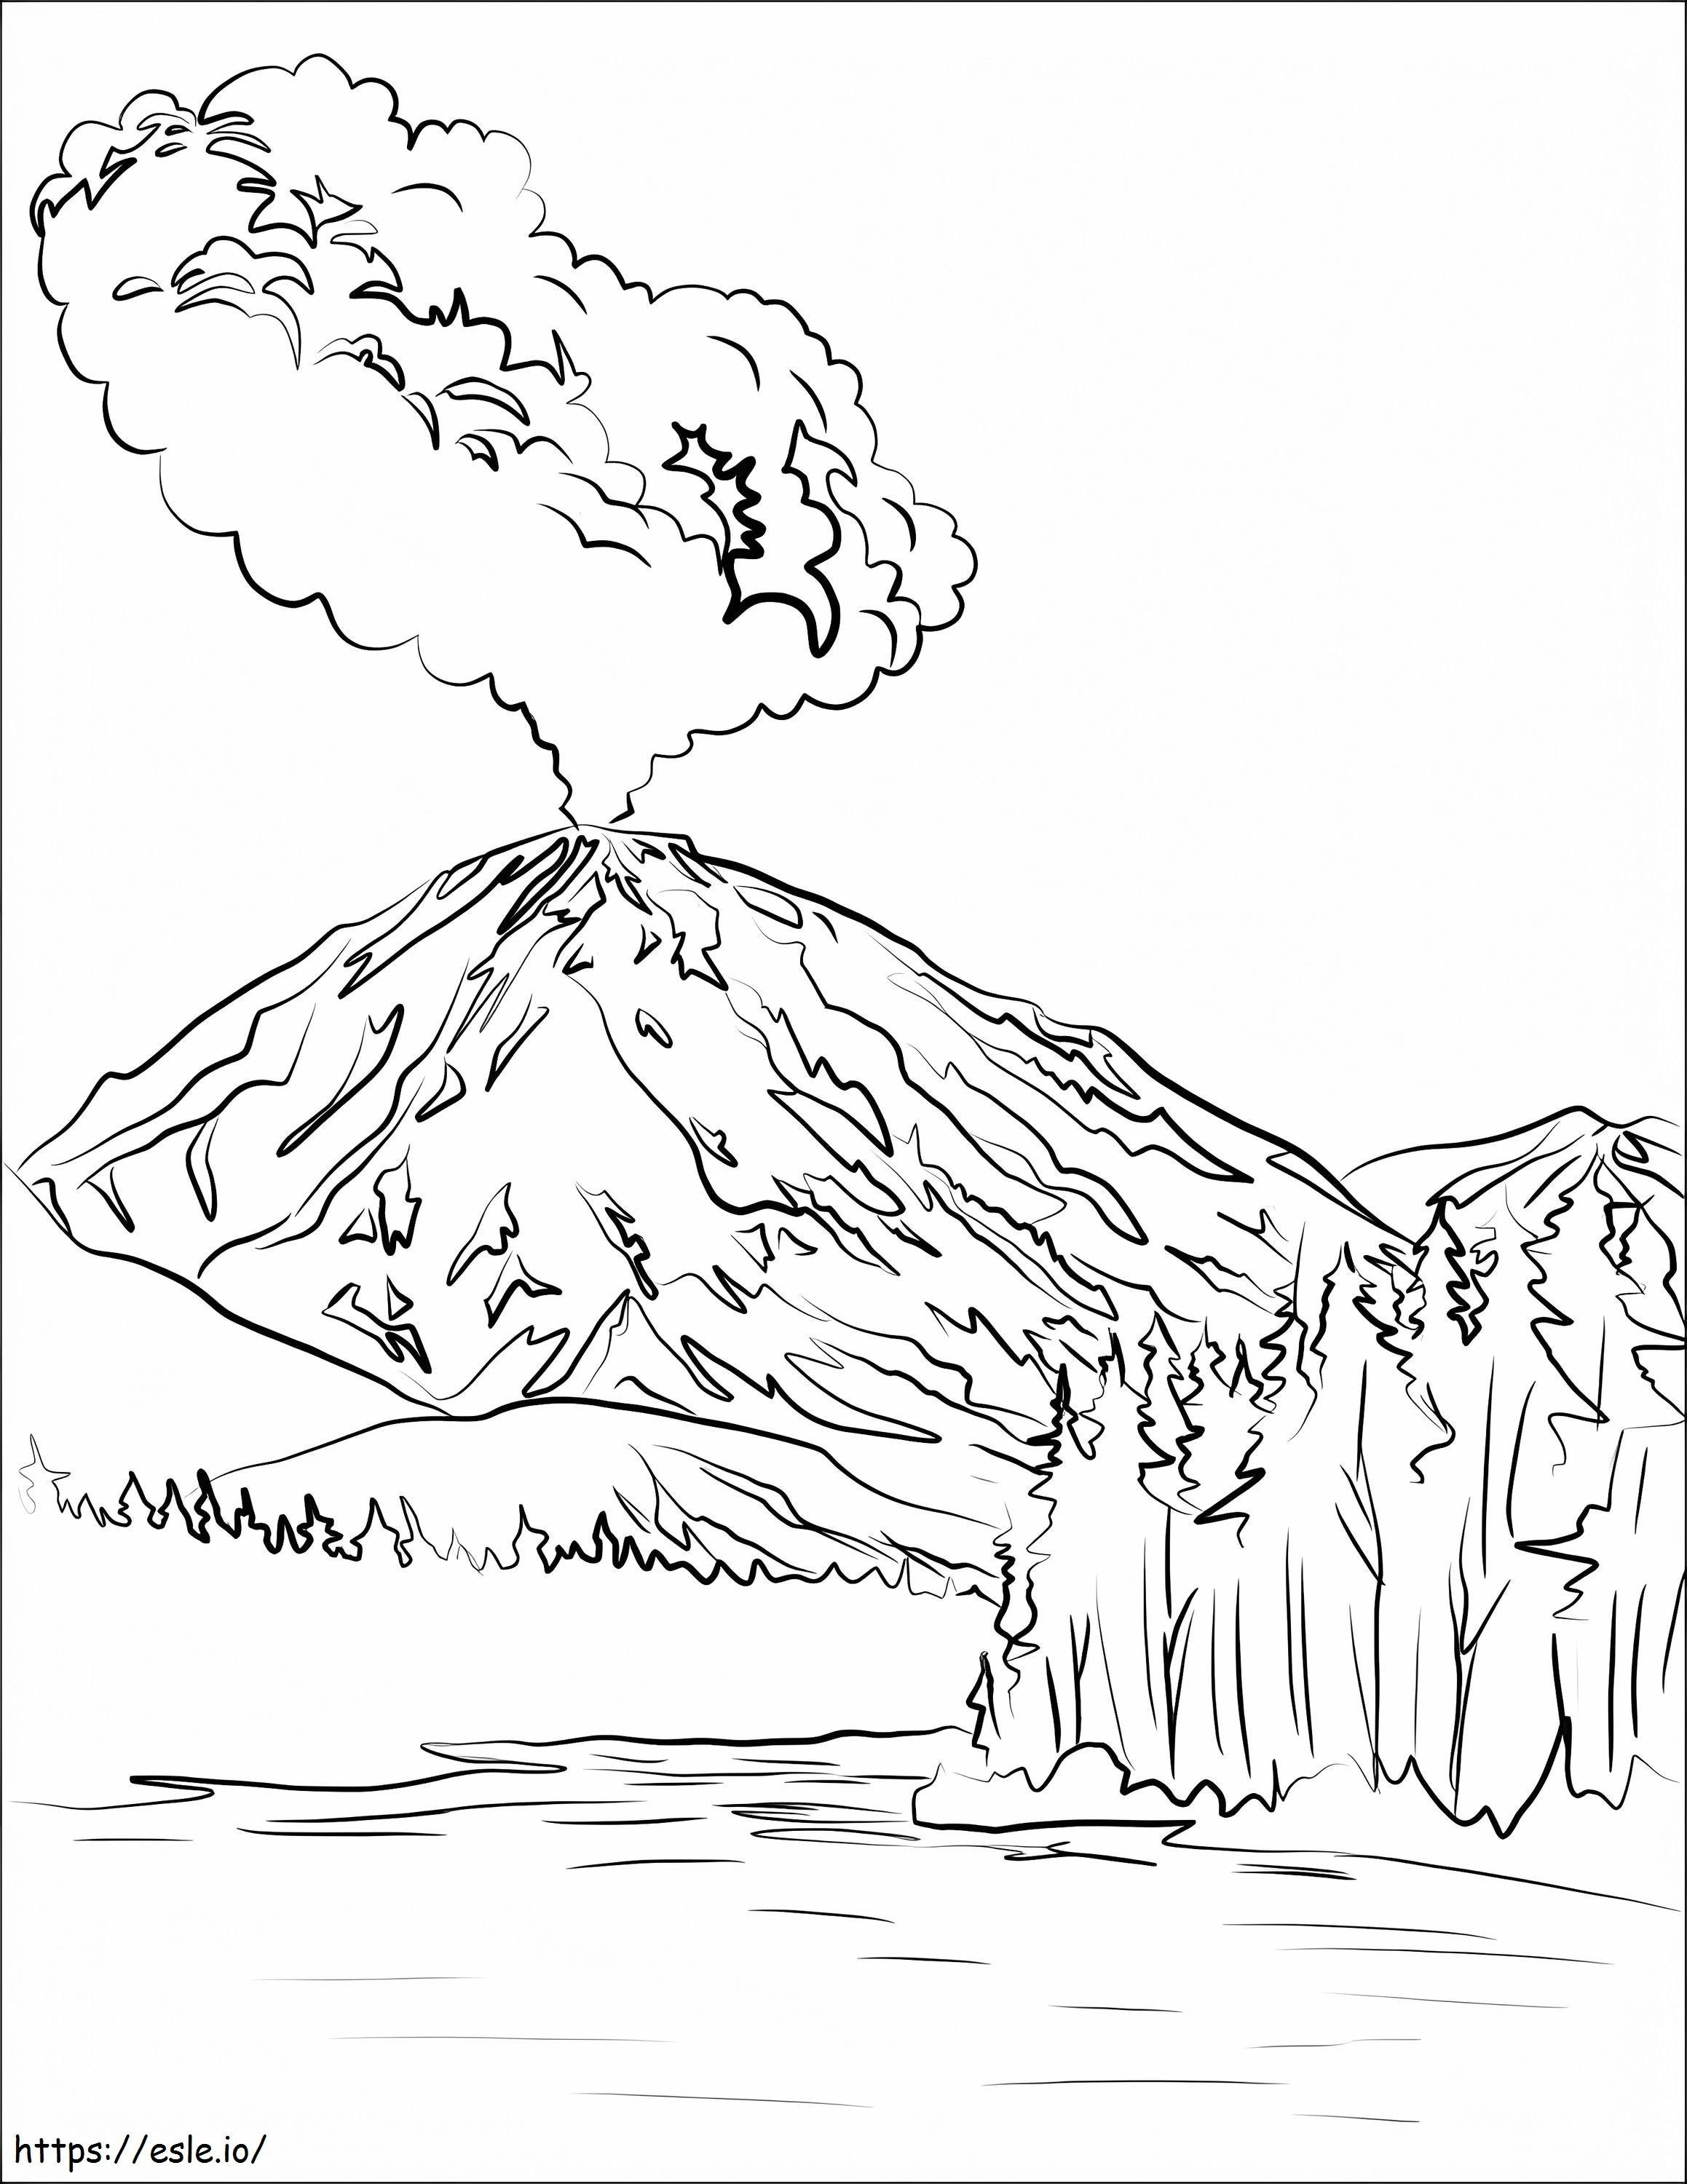 Ausbruch des Vulkans Lassen Peak ausmalbilder